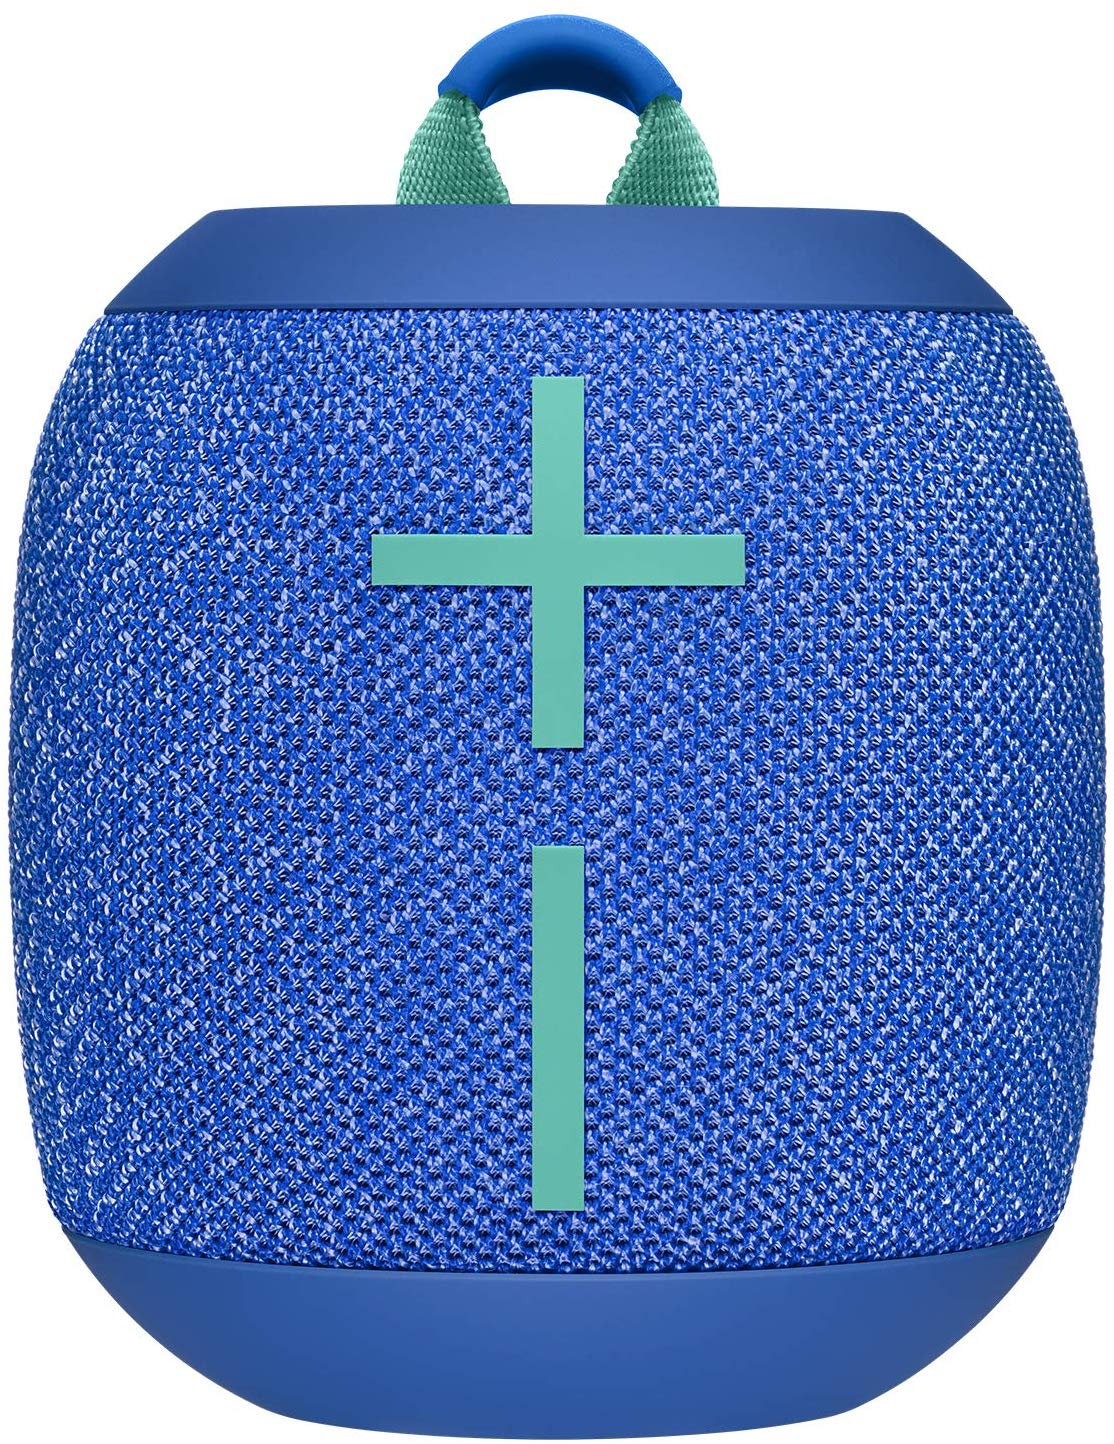 Ultimate Ears WONDERBOOM 2 Portable Waterproof Bluetooth Speaker - Bermuda Blue (Certified Refurbished)